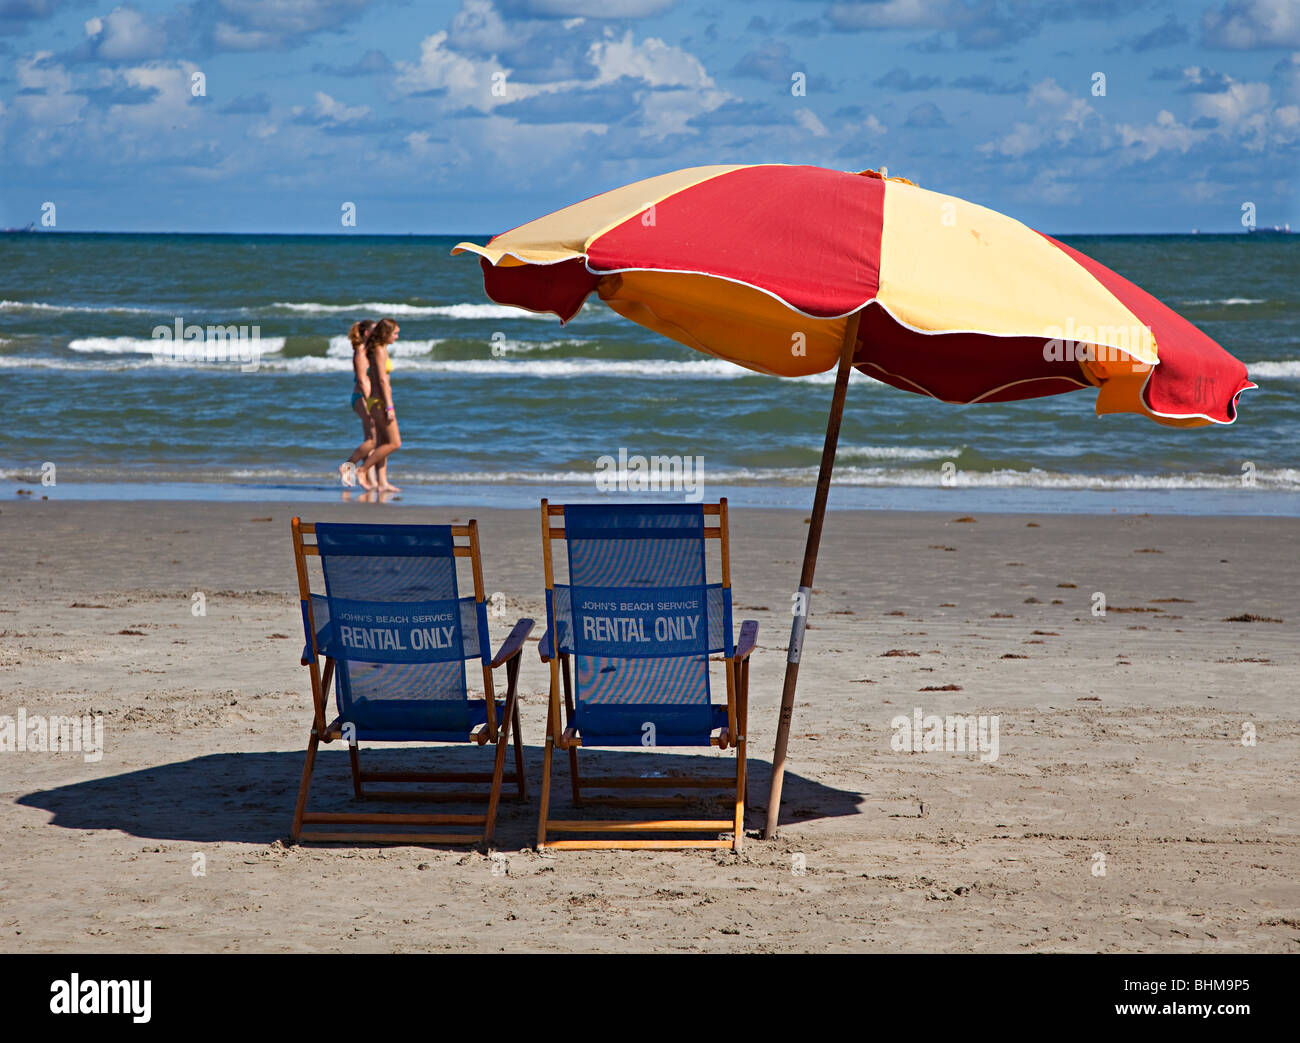 Alquiler de sombrillas de playa fotografías e imágenes de alta resolución -  Alamy